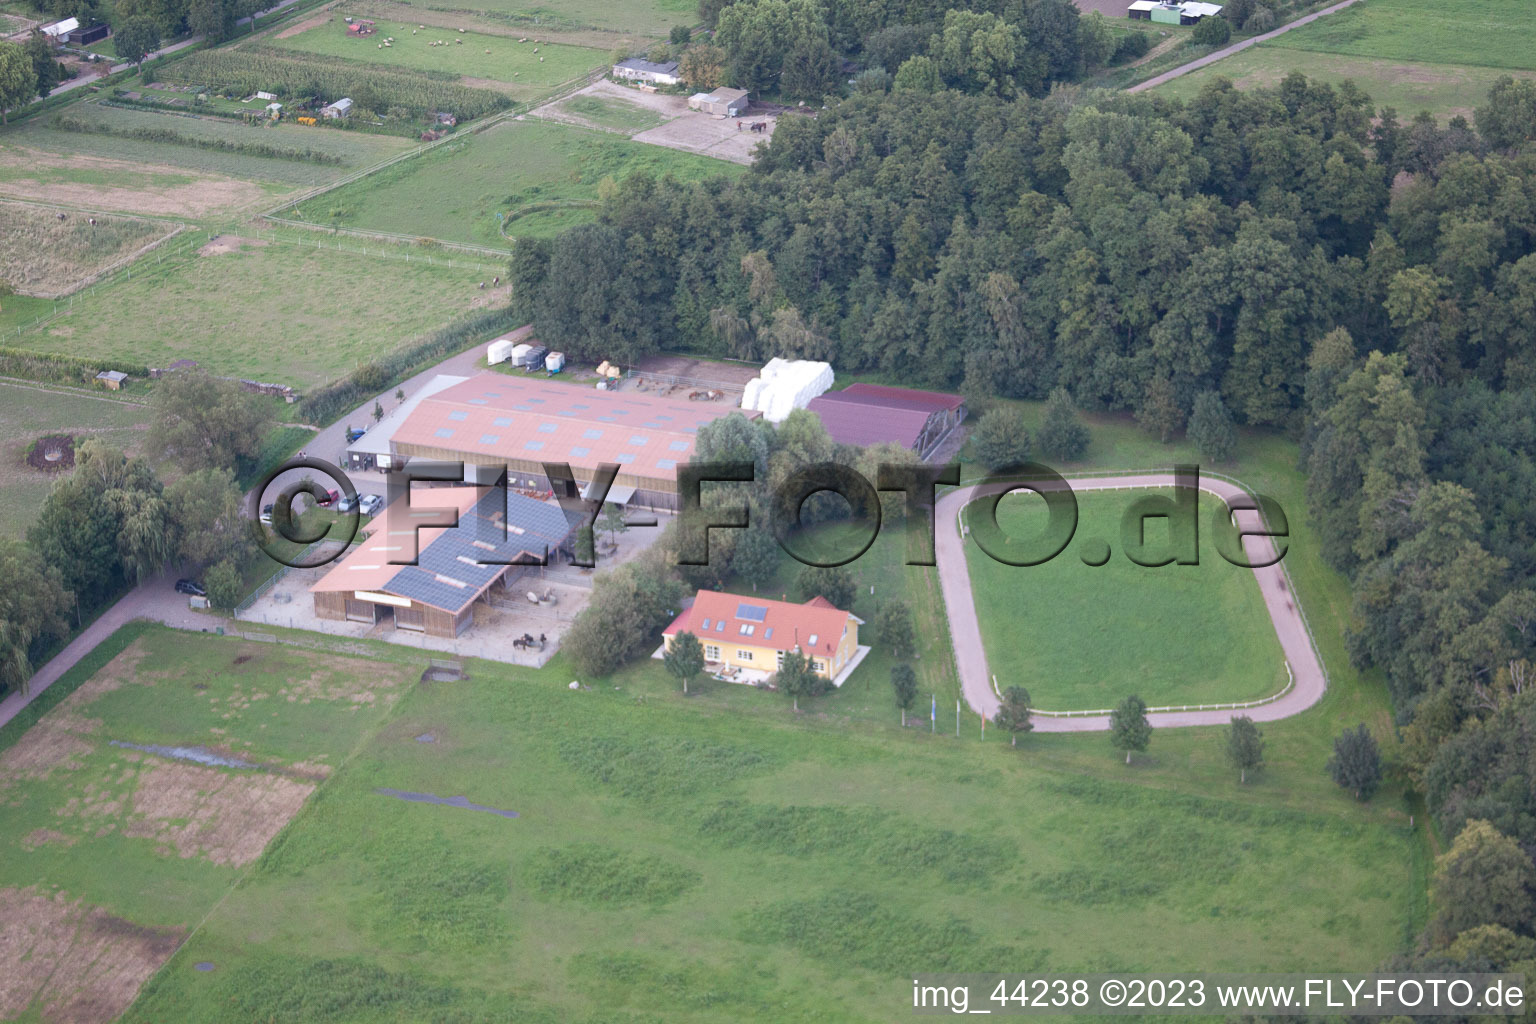 Freckenfeld dans le département Rhénanie-Palatinat, Allemagne vue d'en haut